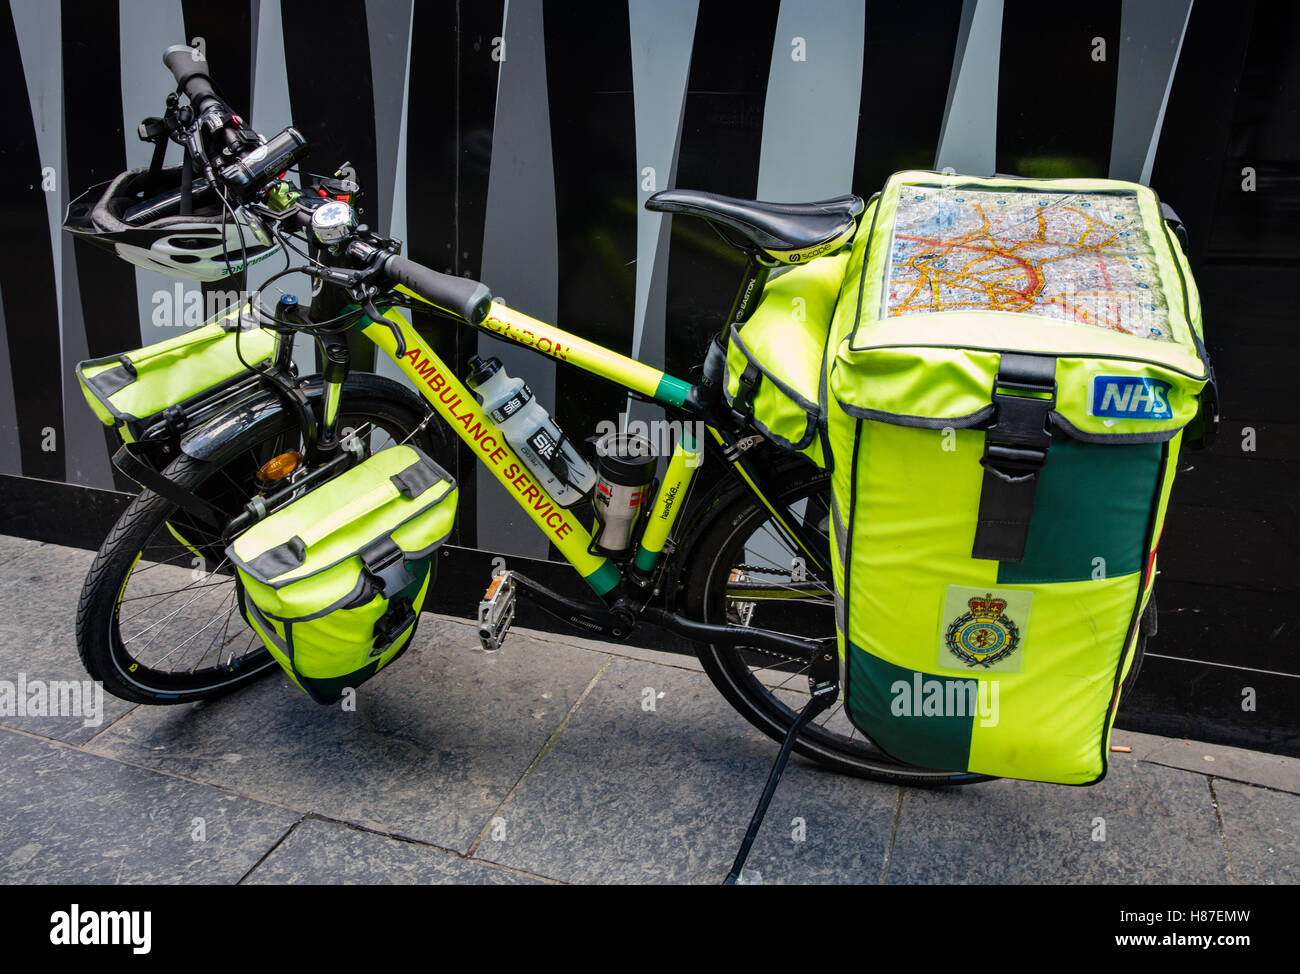 Completamente attrezzata ambulanza NHS bicicletta usata per raggiungere le emergenze mediche più velocemente rispetto a quelli convenzionali ambulanze nel traffico di Londra REGNO UNITO Foto Stock